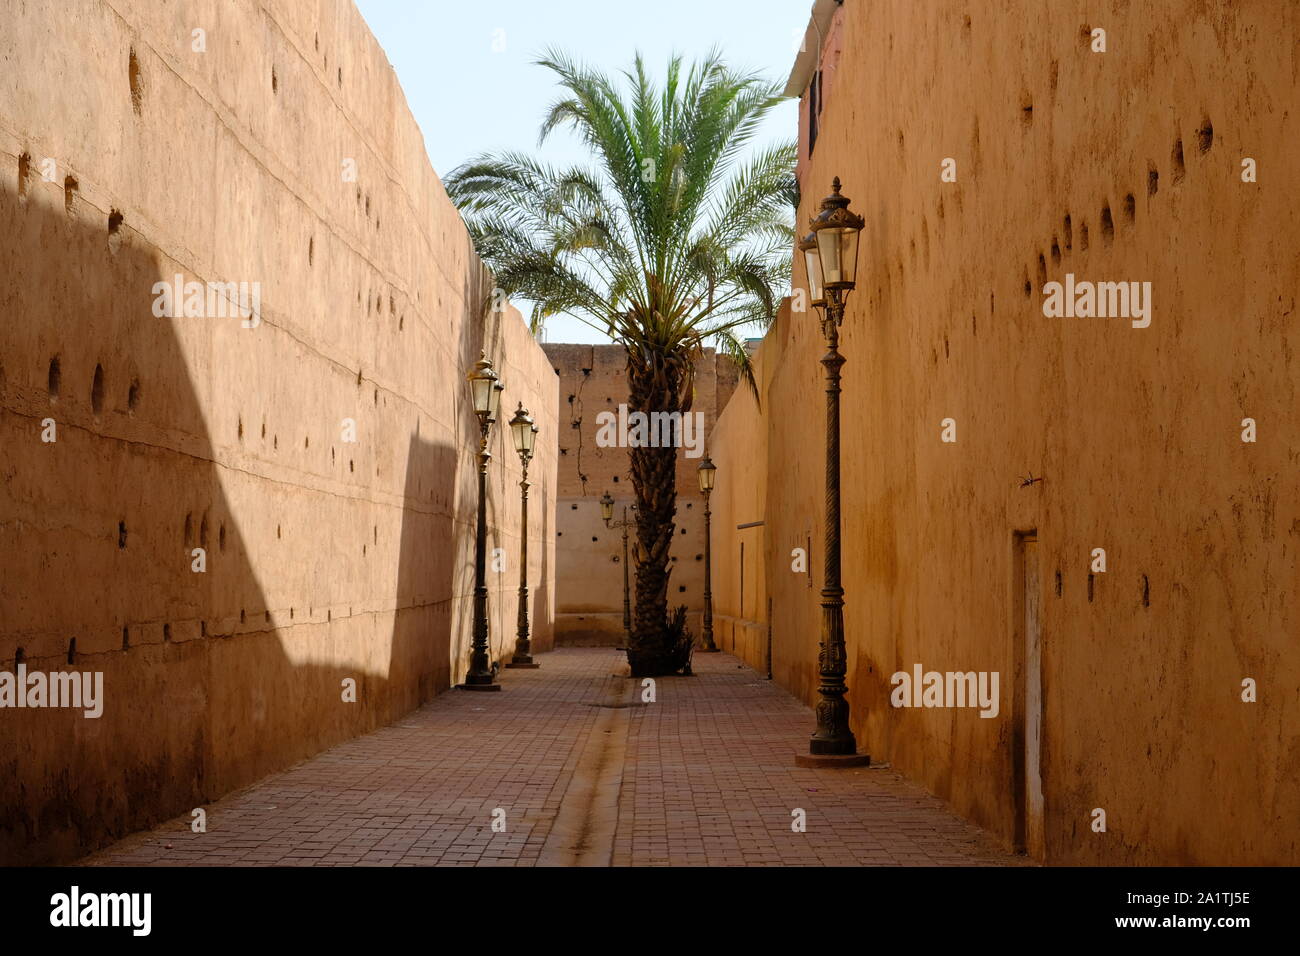 Morocco Marrakesh red city medina street photo, ramparts of beaten clay Stock Photo